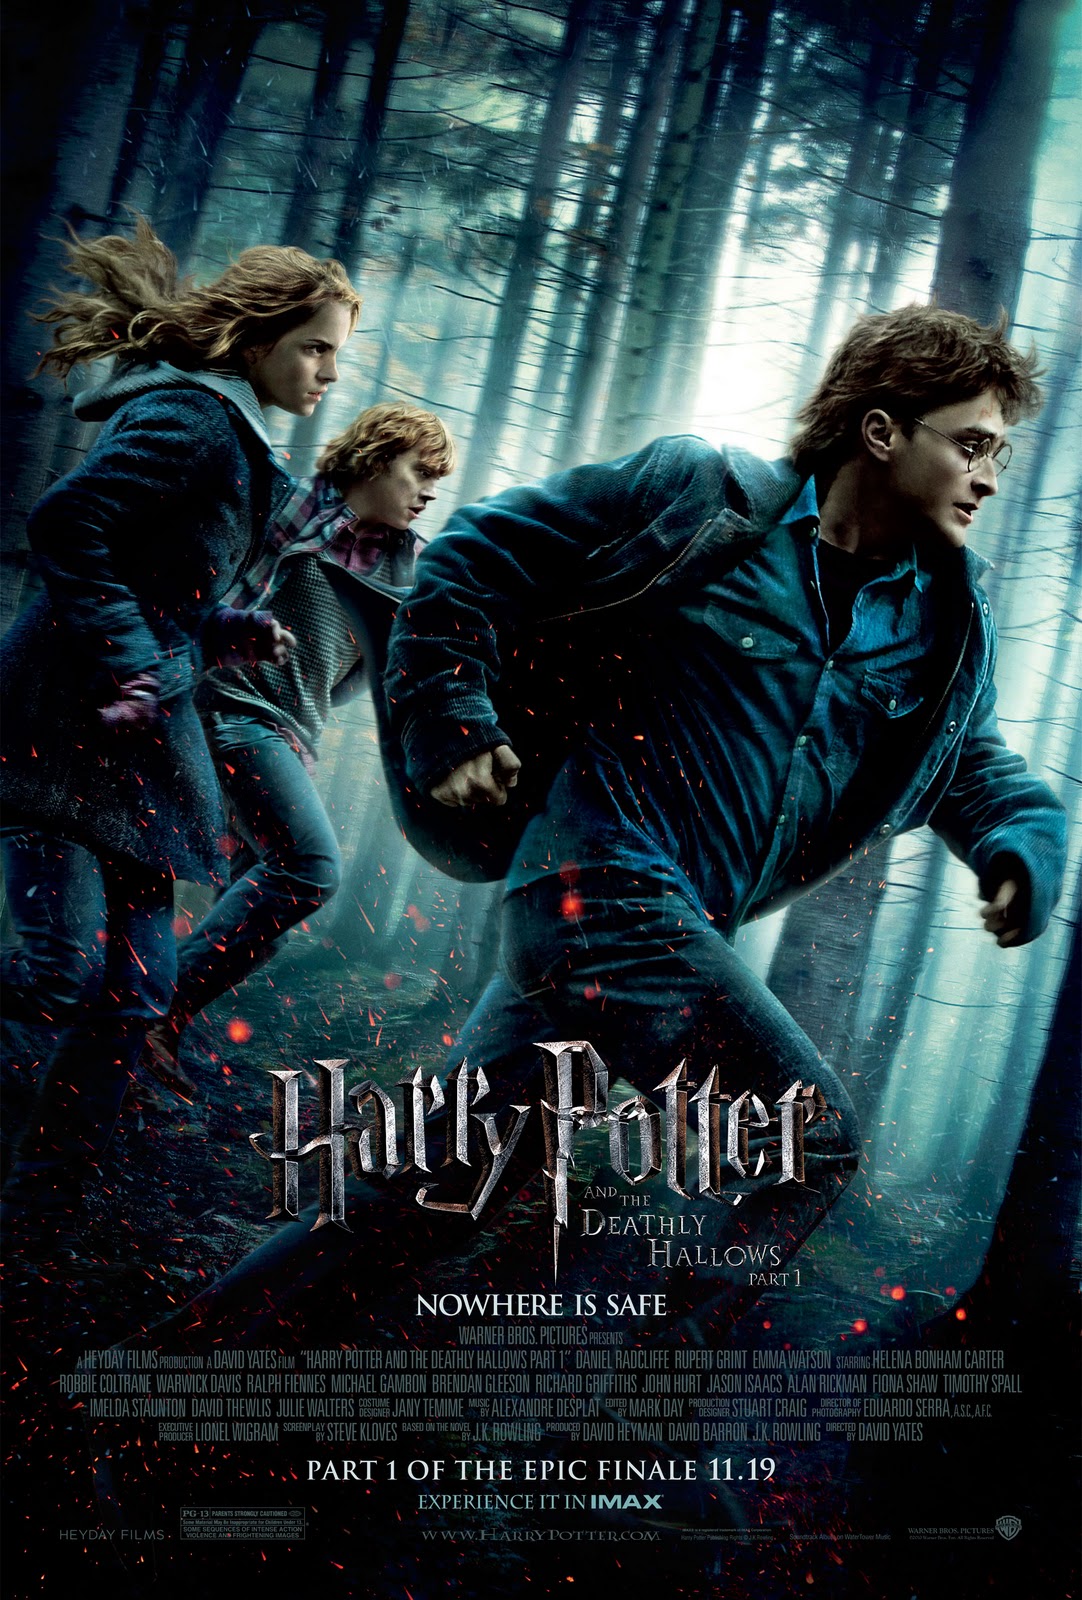 http://1.bp.blogspot.com/_Zj1d9anTOEs/TR4ogSUzk8I/AAAAAAAAAWc/eGyAyZ4Jk-g/s1600/Harry-Potter-Deathly-Hallows-Wallpaper-Poster.jpg